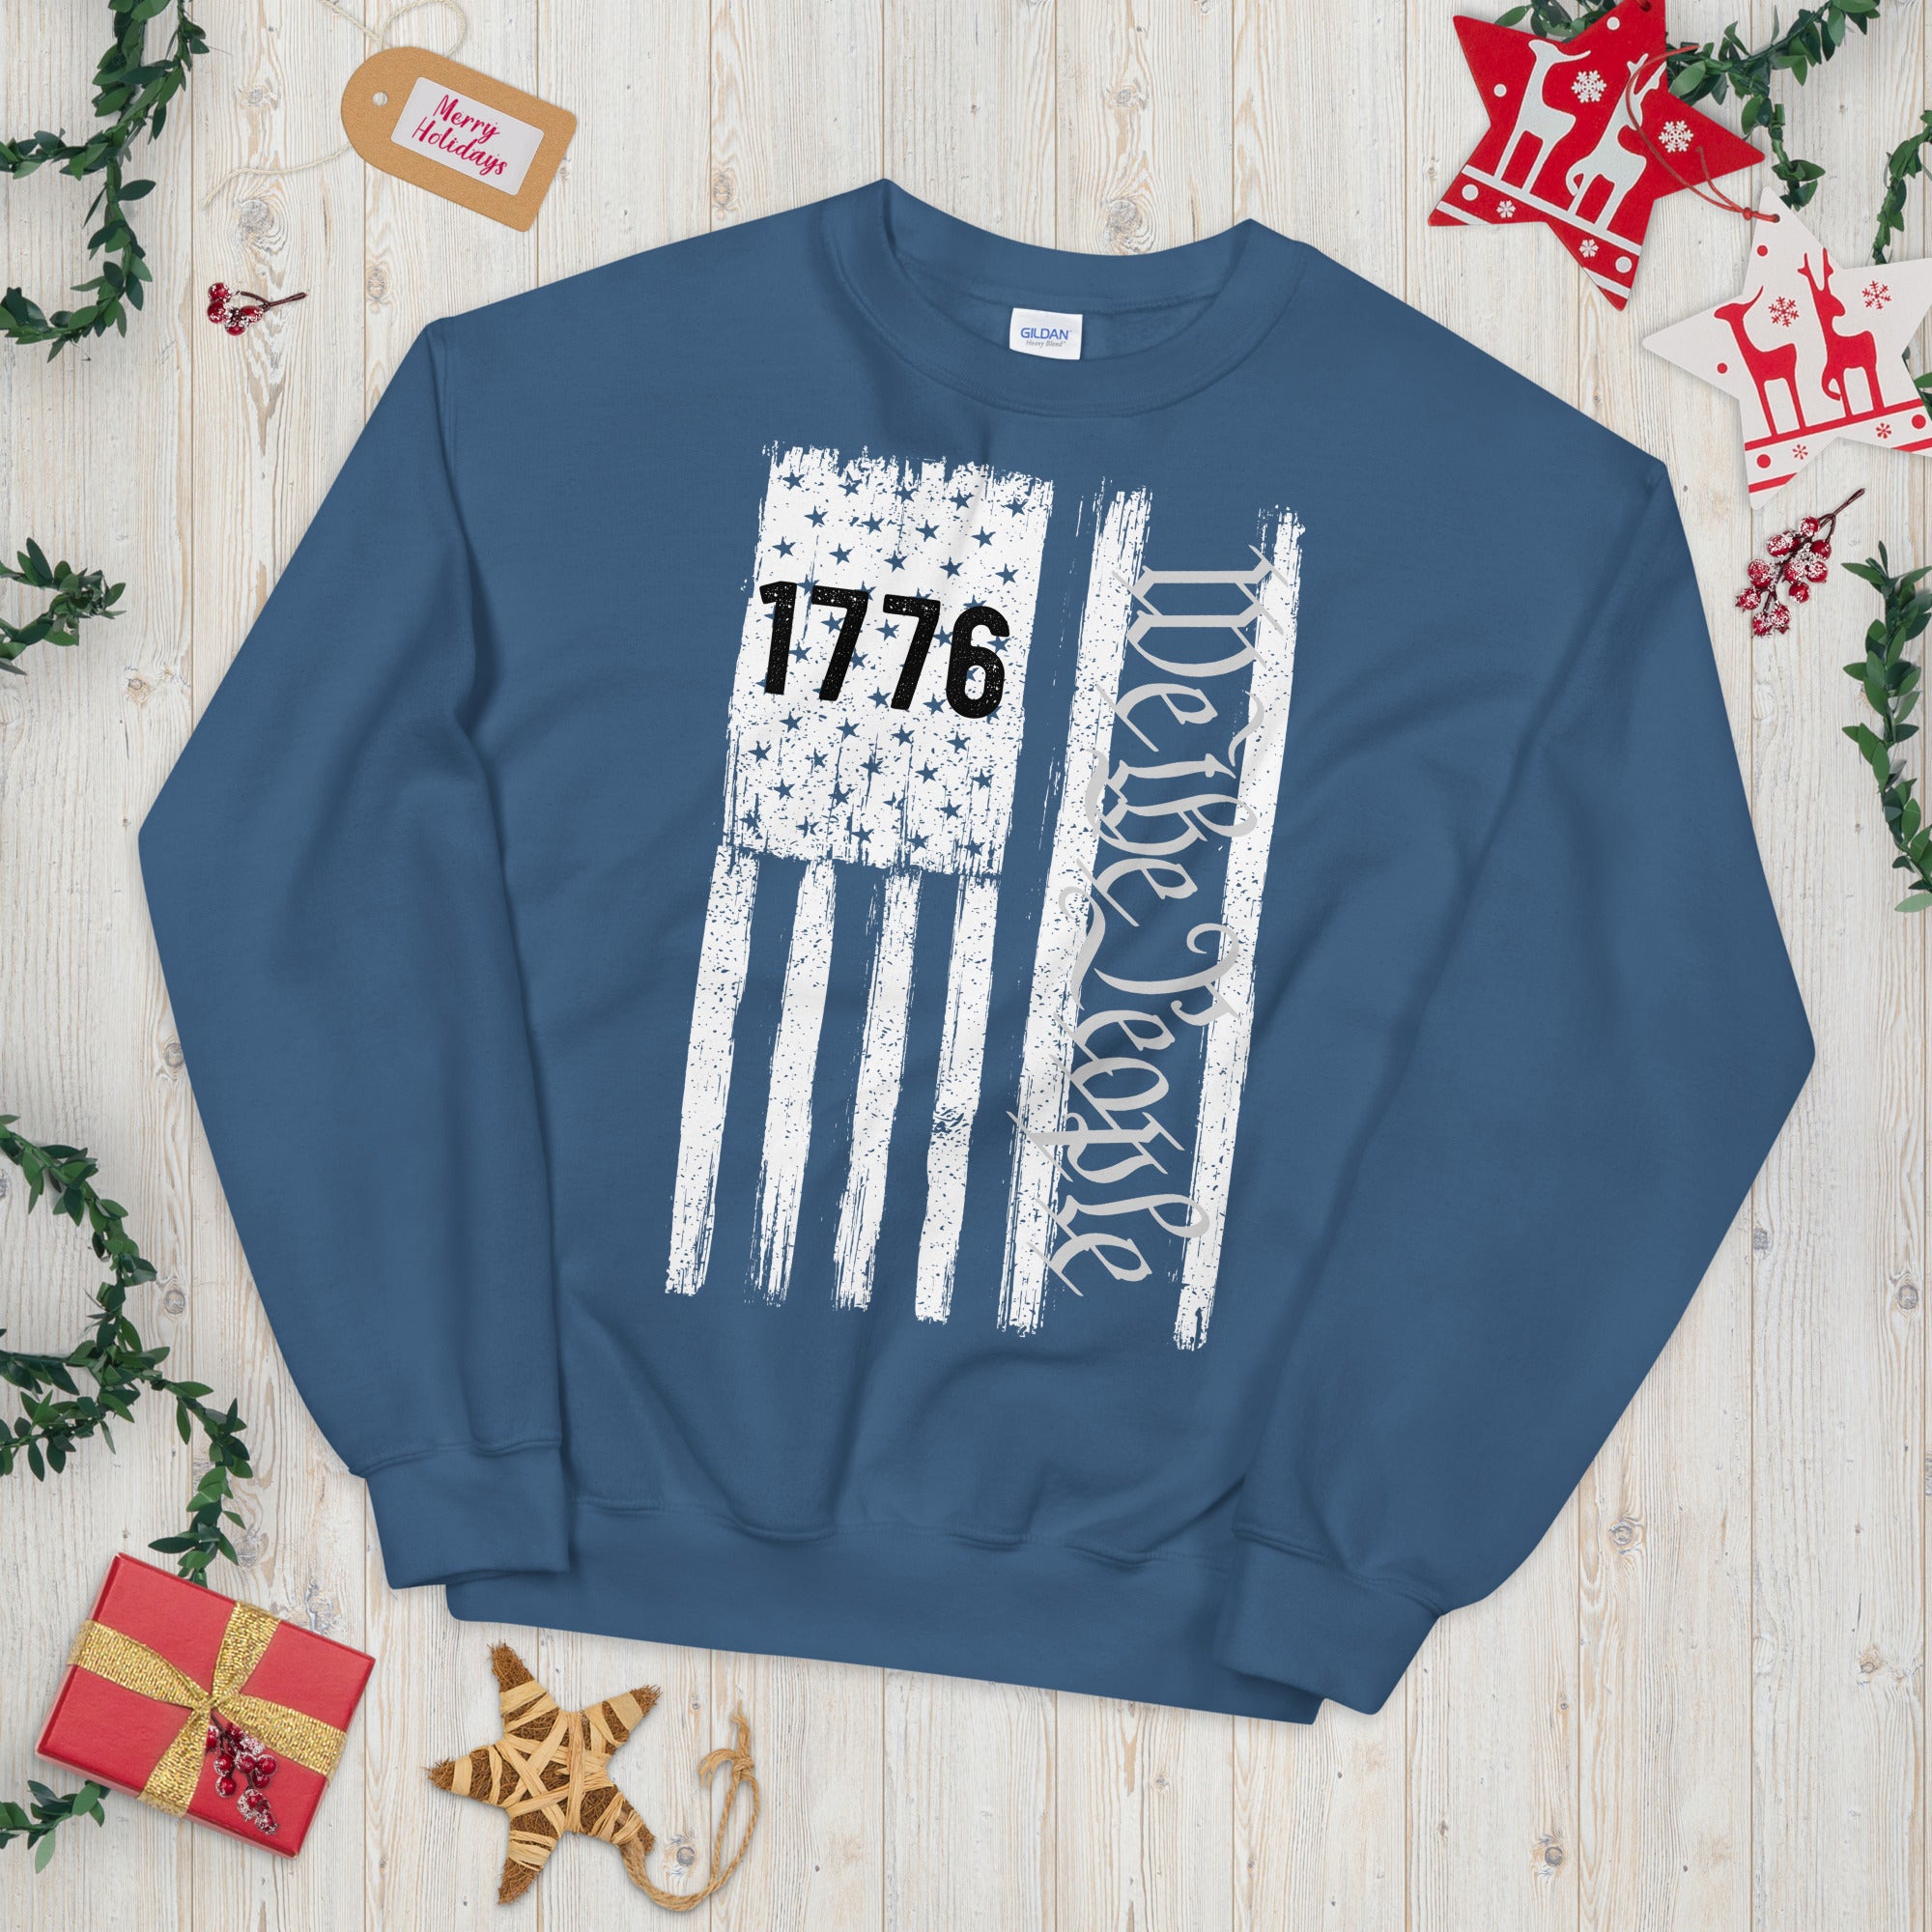 1776 Nosotros el suéter del pueblo, bandera patriótica de EE. UU., camisa vintage de la bandera de EE. UU., Día de la Independencia, suéter de 1776, regalo patriótico de nosotros el pueblo